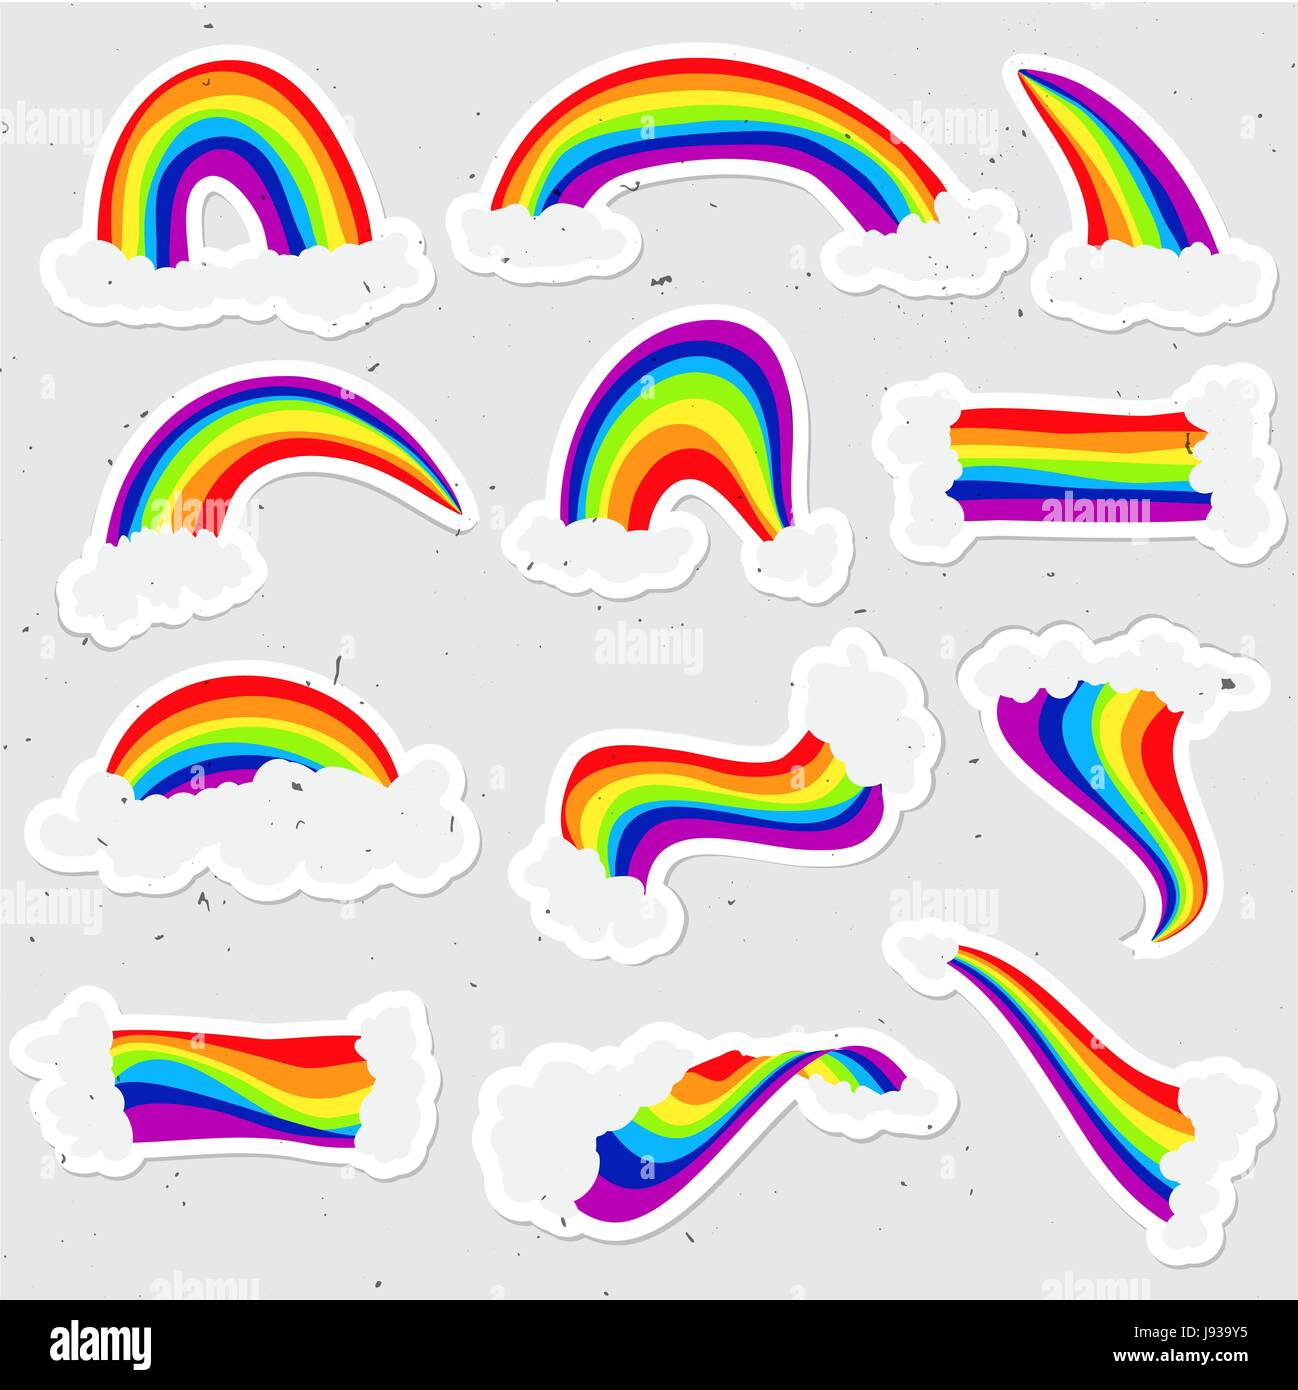 Niedlichen Regenbogen Aufkleber Vektor-Set. Regenbogen Cartoon Aufkleber-Abbildung mit Wolken im Himmel. Hand zu ziehen Süße Regenbogen und Cloud-Aufkleber Stock Vektor